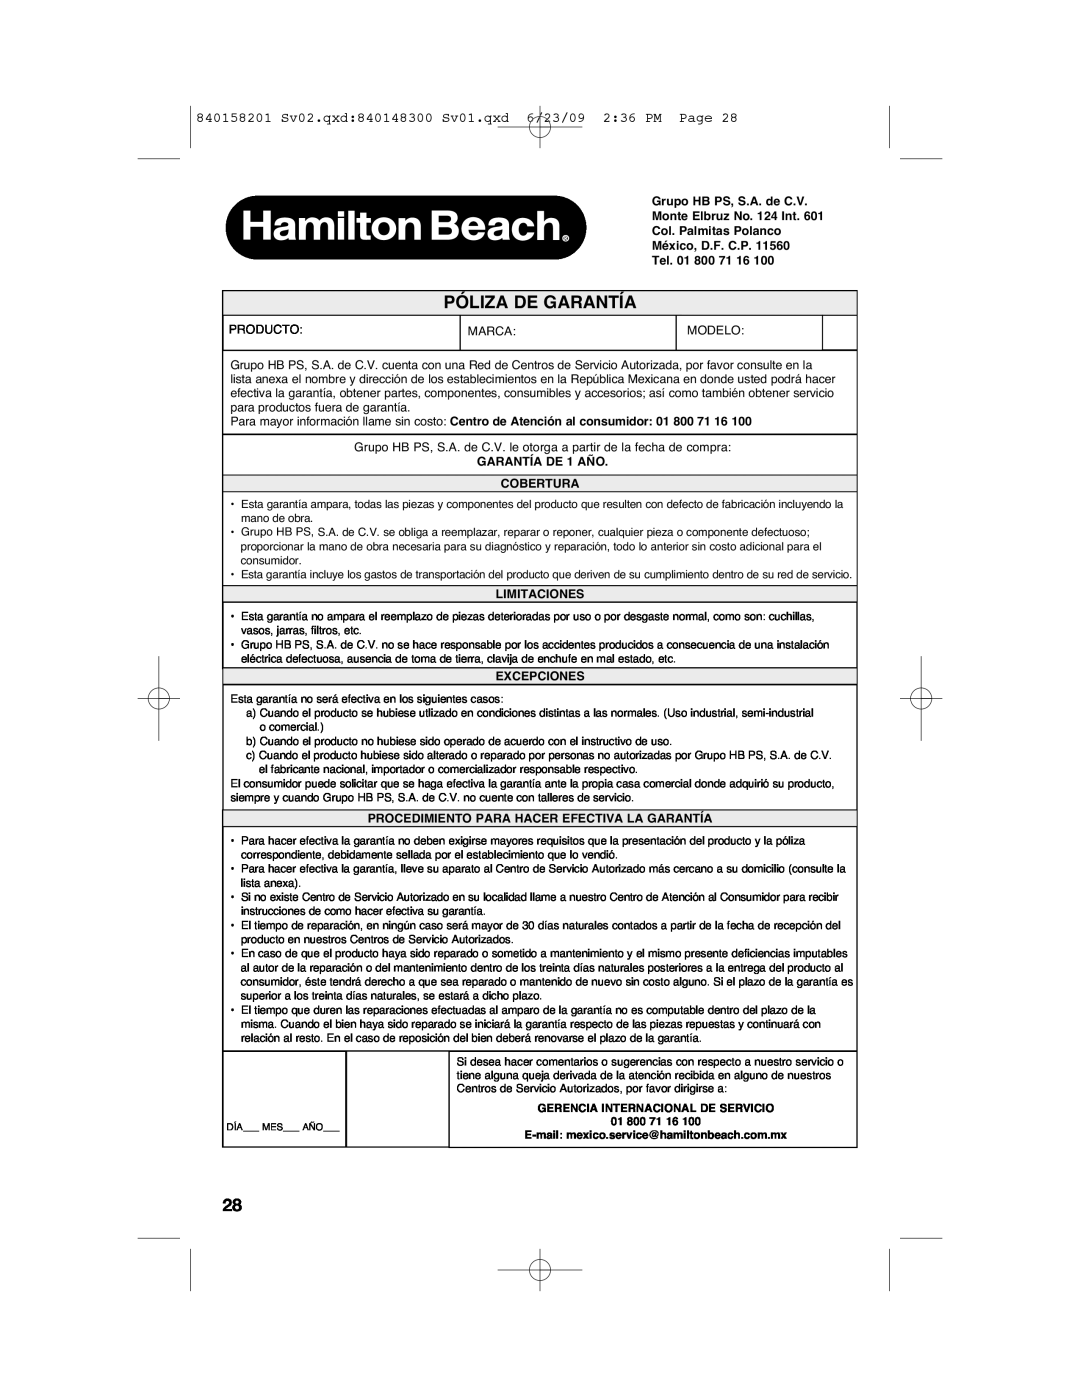 Hamilton Beach Póliza De Garantía, 840158201 Sv02.qxd840148300 Sv01.qxd 6/23/09 236 PM Page, Limitaciones, Excepciones 